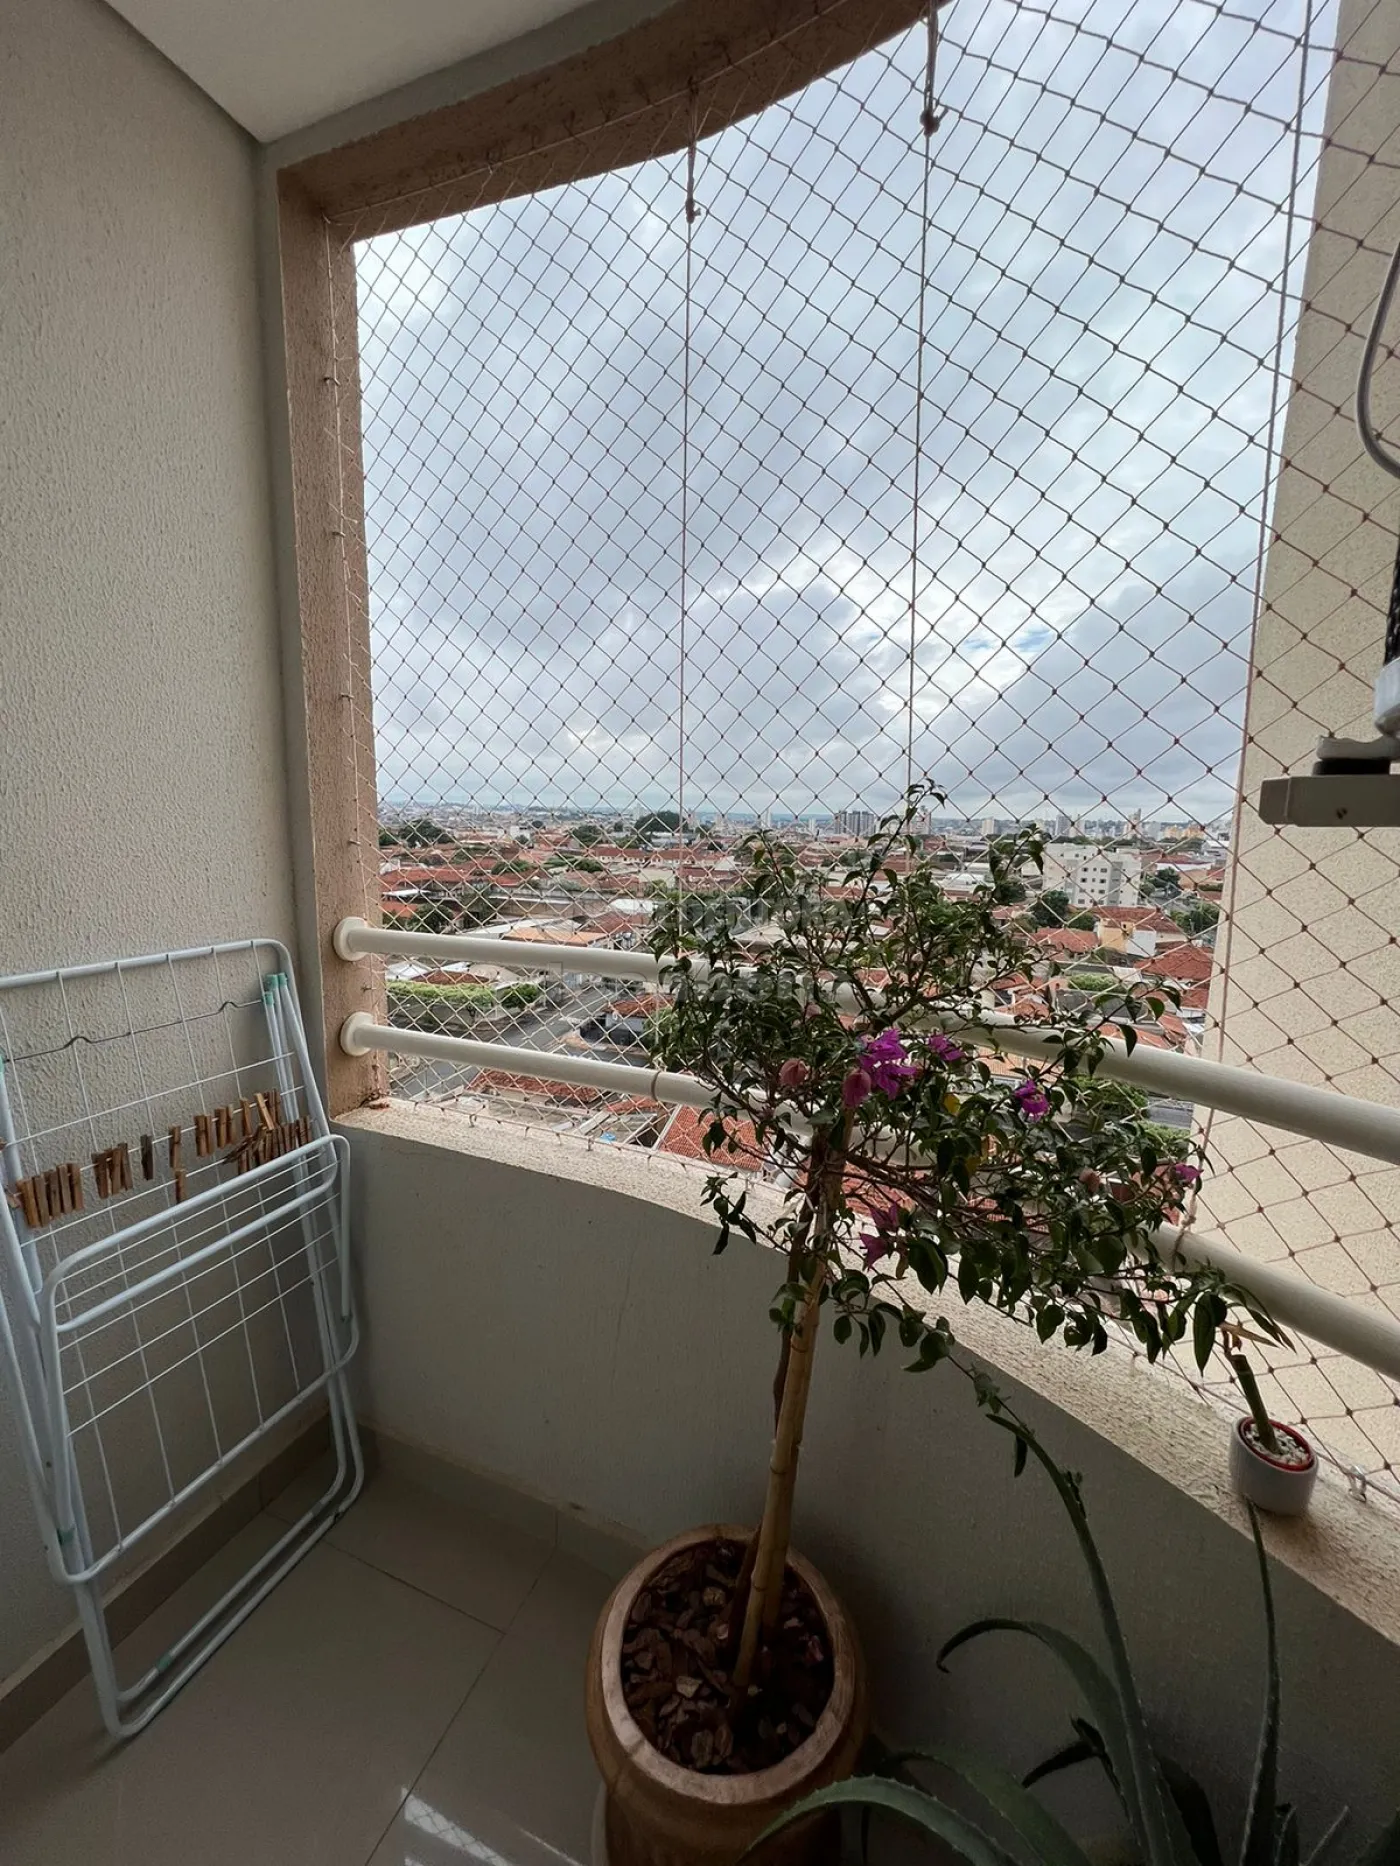 Comprar Apartamento / Padrão em São José do Rio Preto R$ 350.000,00 - Foto 21